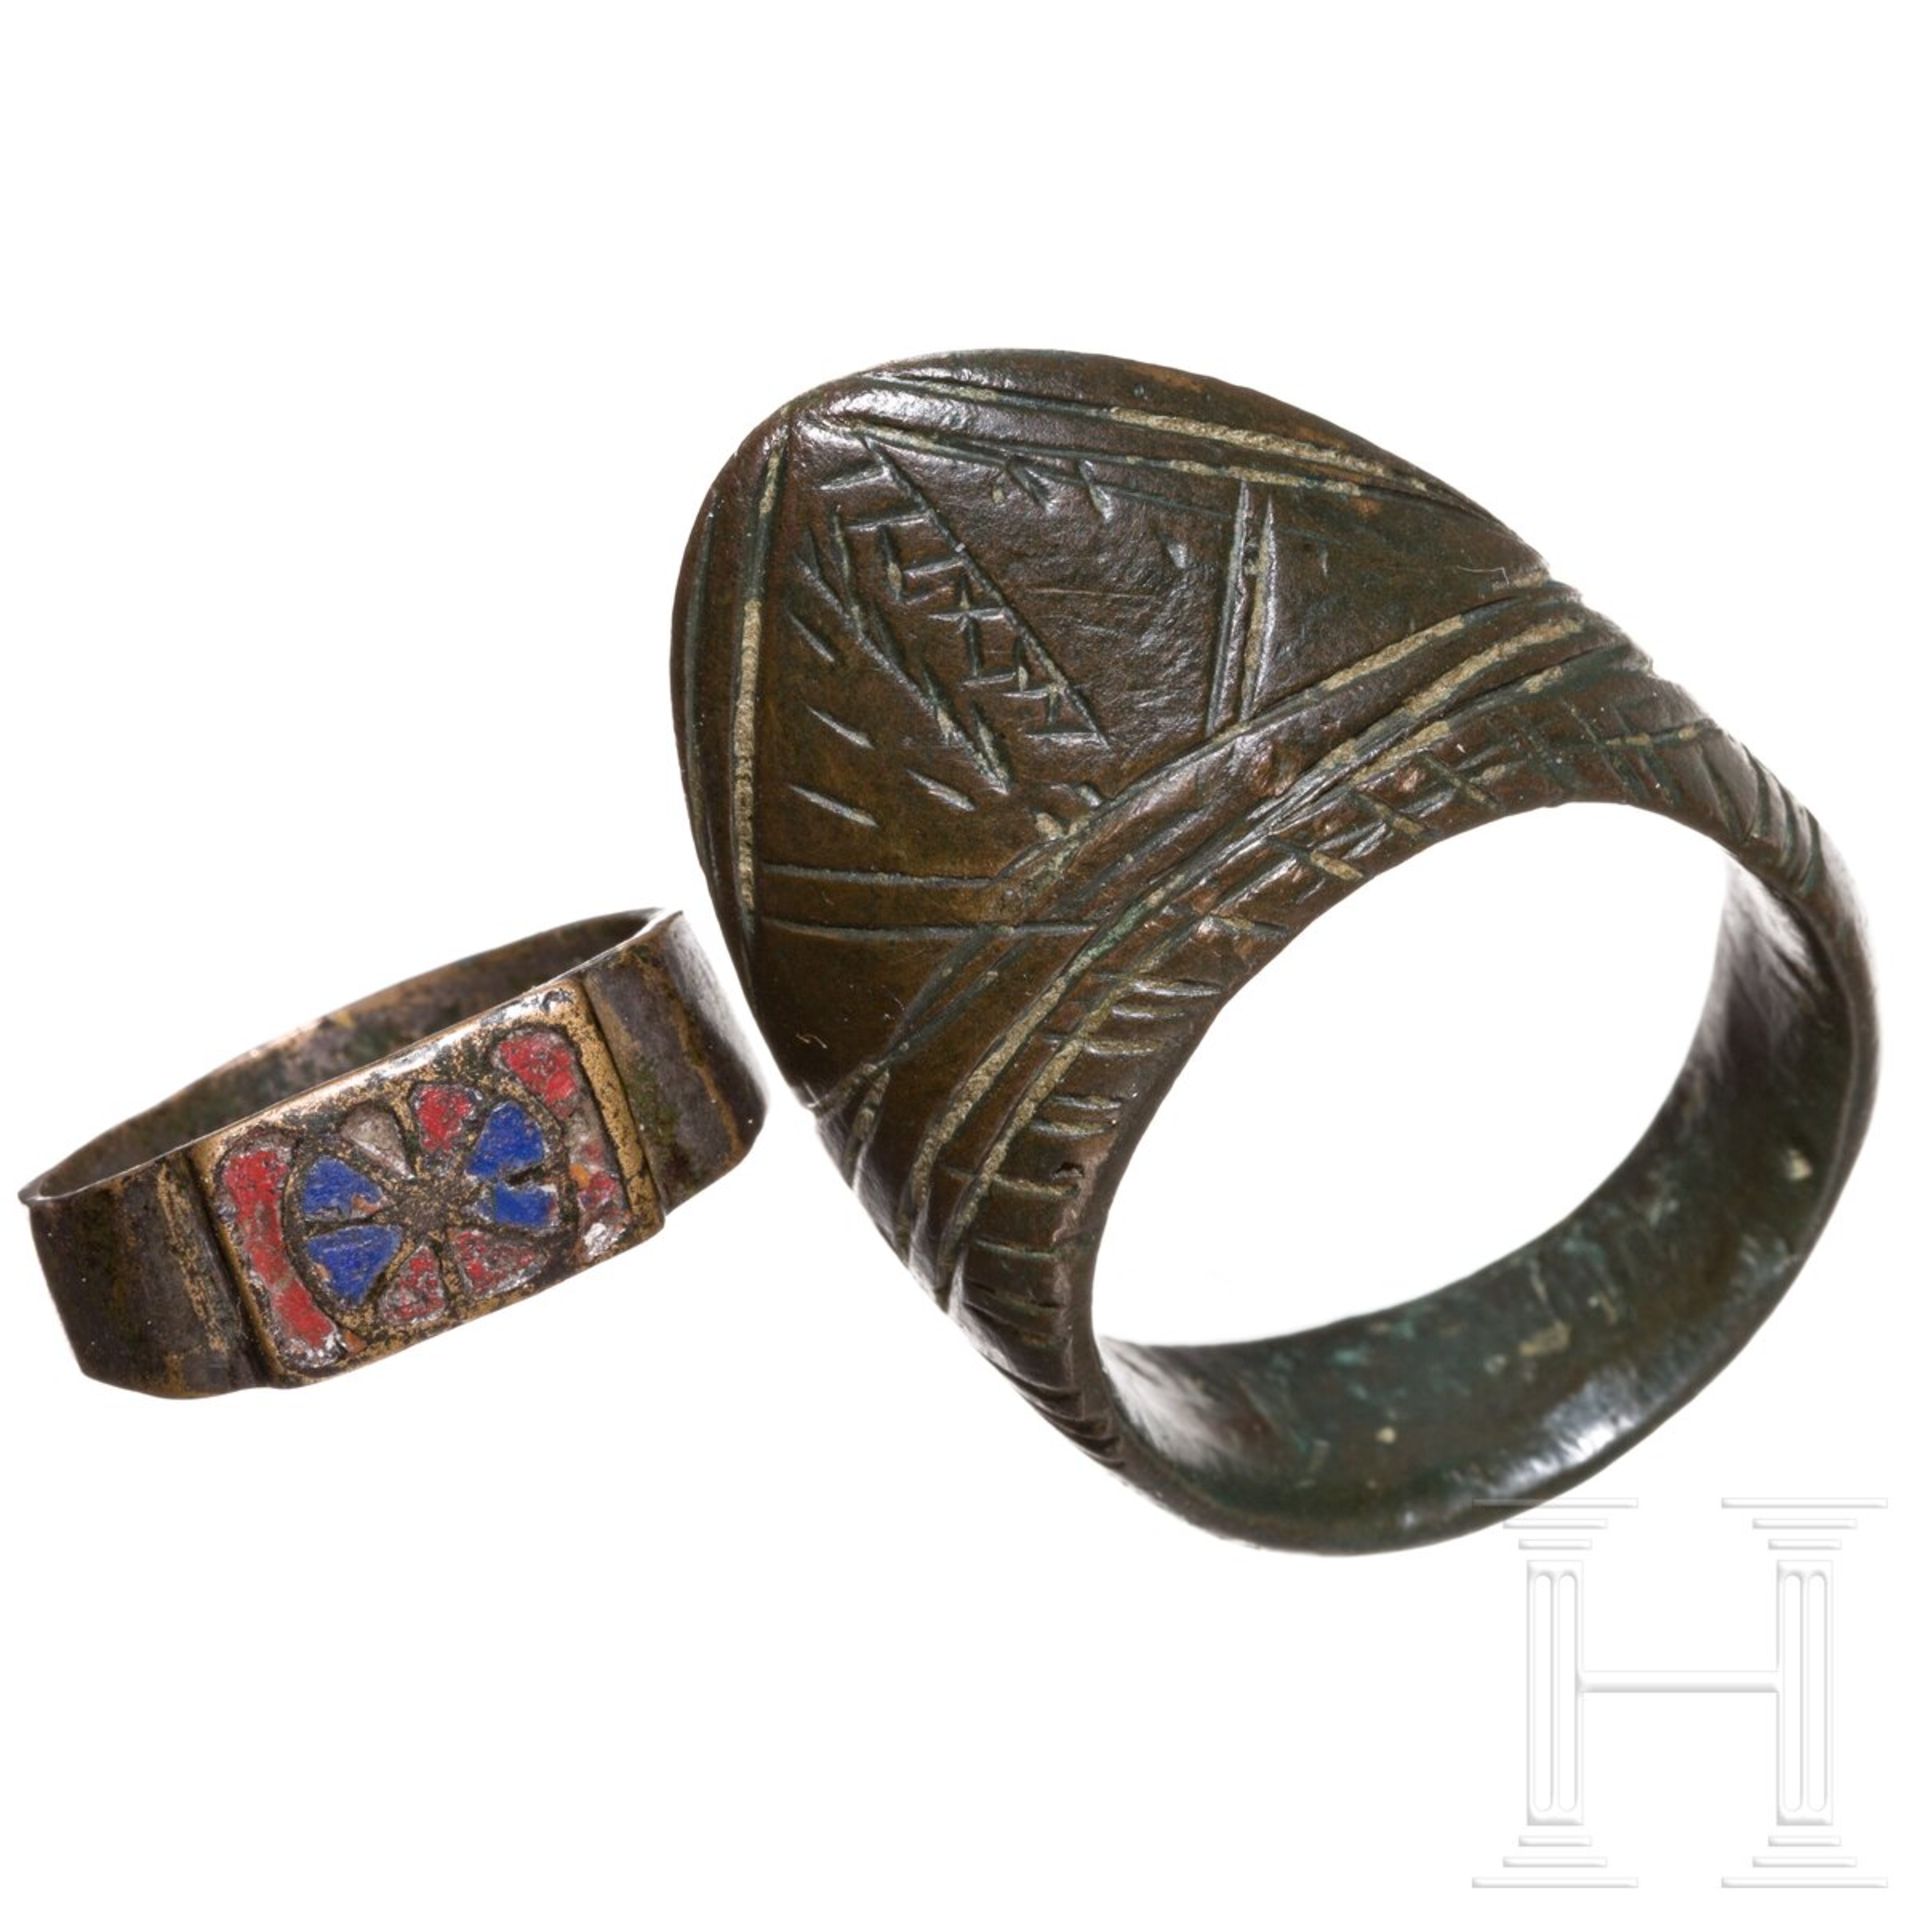 Ring mit Emailleverzierung auf der Ringplatte, romanisch, 11. - 12. Jhdt., sowie Bogenschützenring m